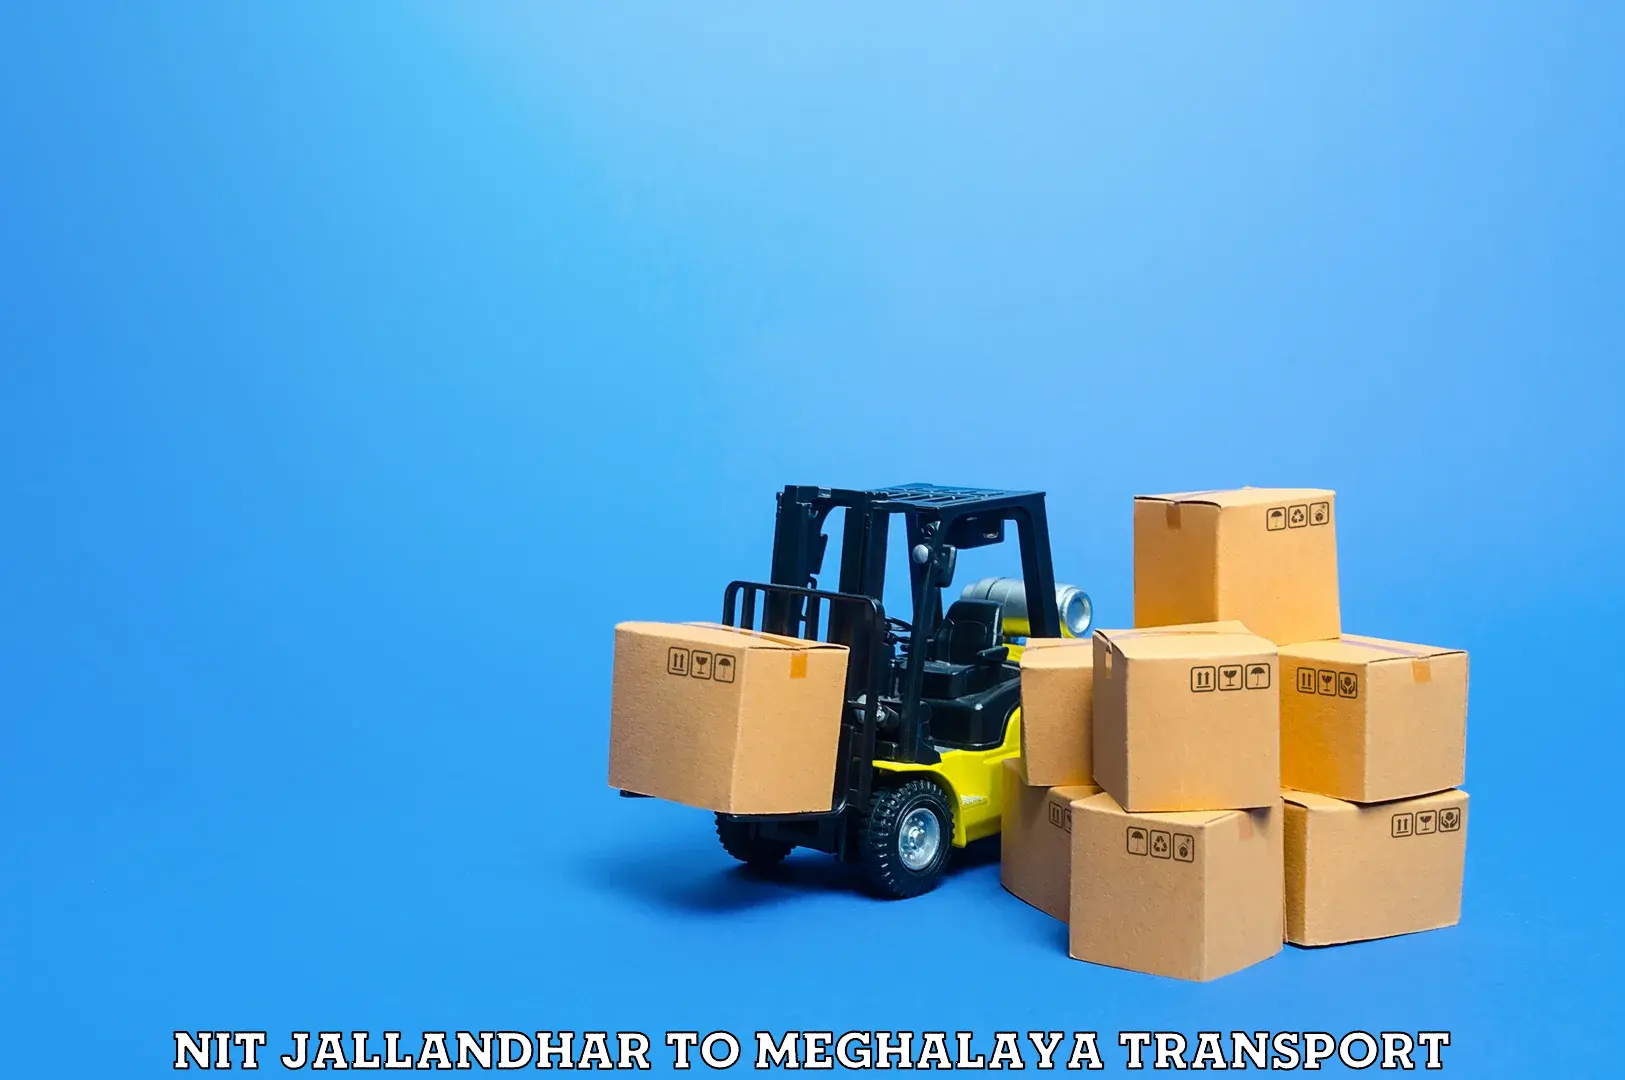 Lorry transport service NIT Jallandhar to Phulbari